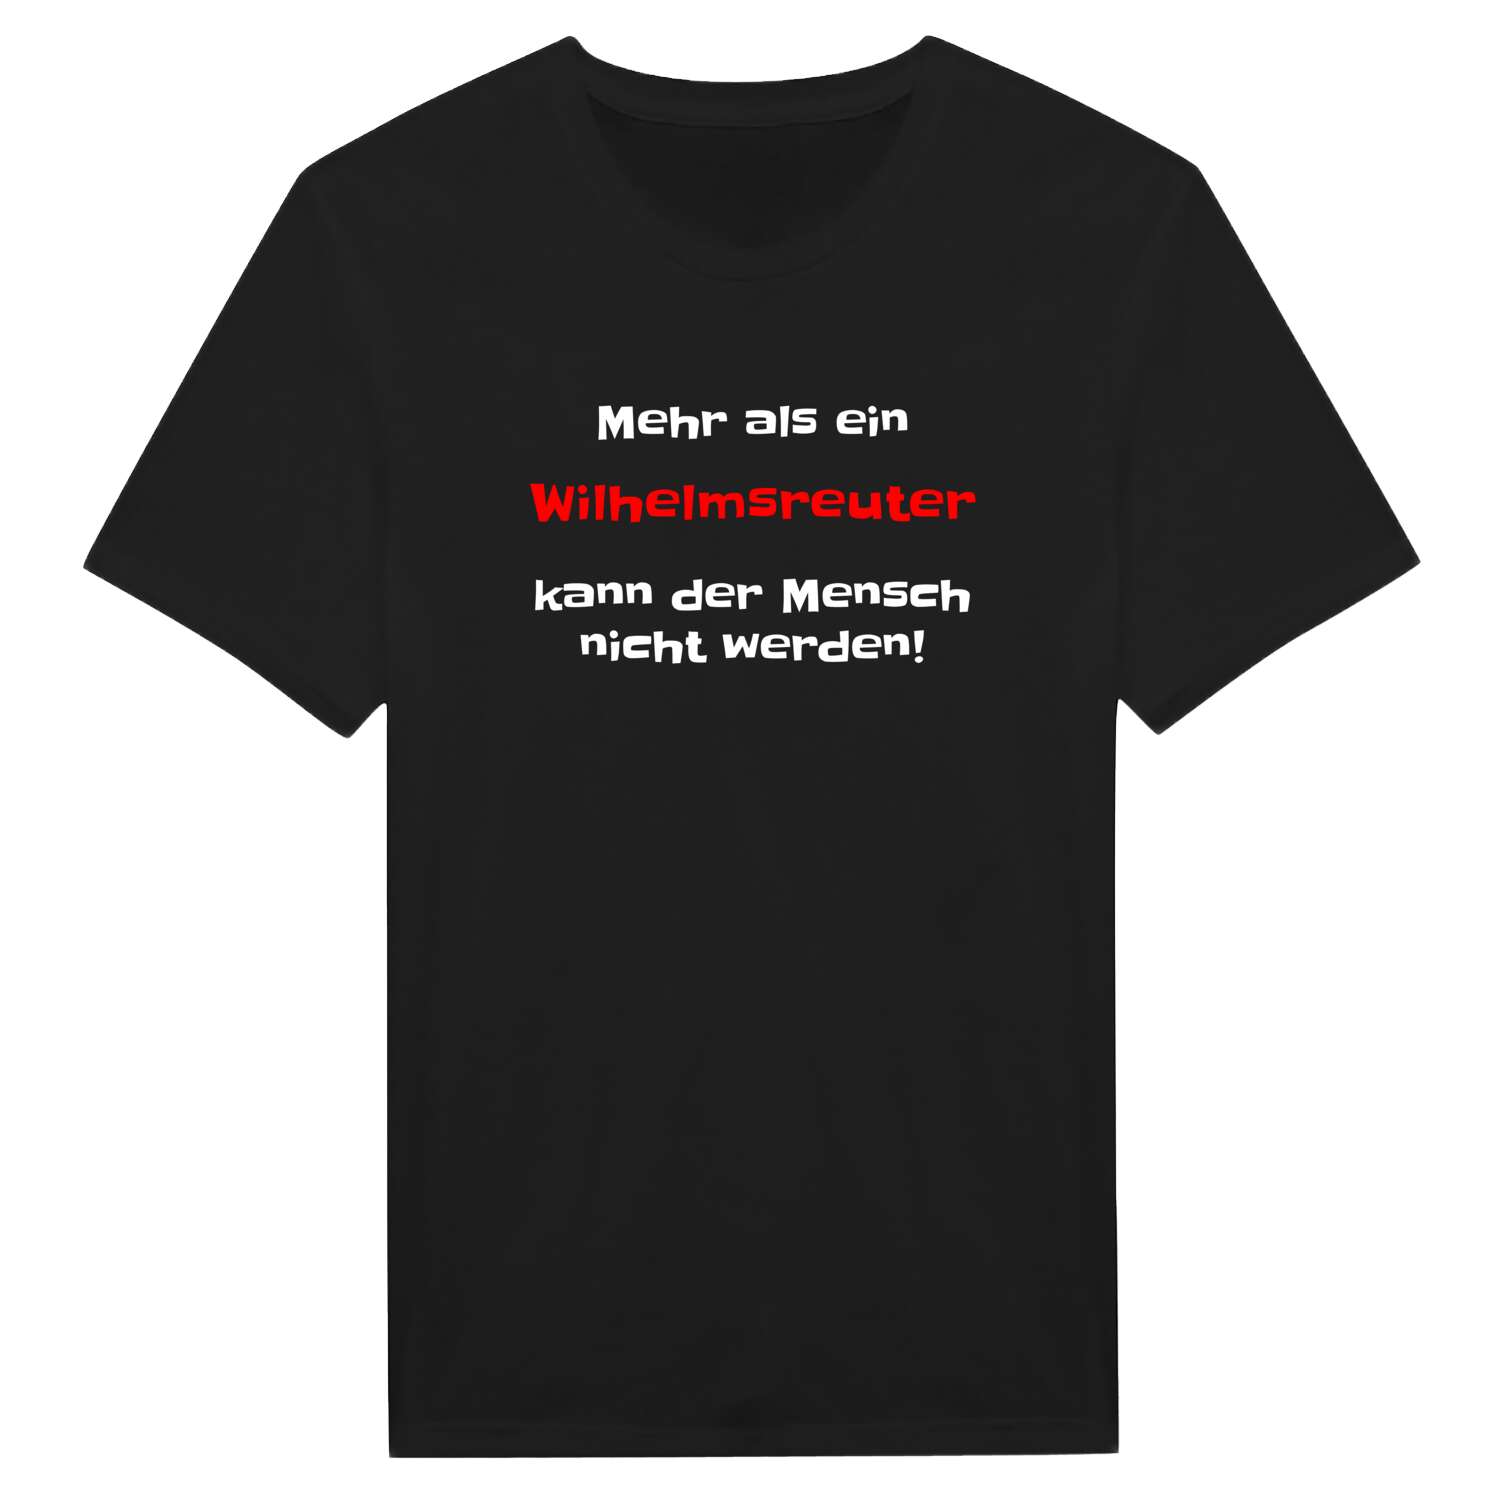 Wilhelmsreut T-Shirt »Mehr als ein«